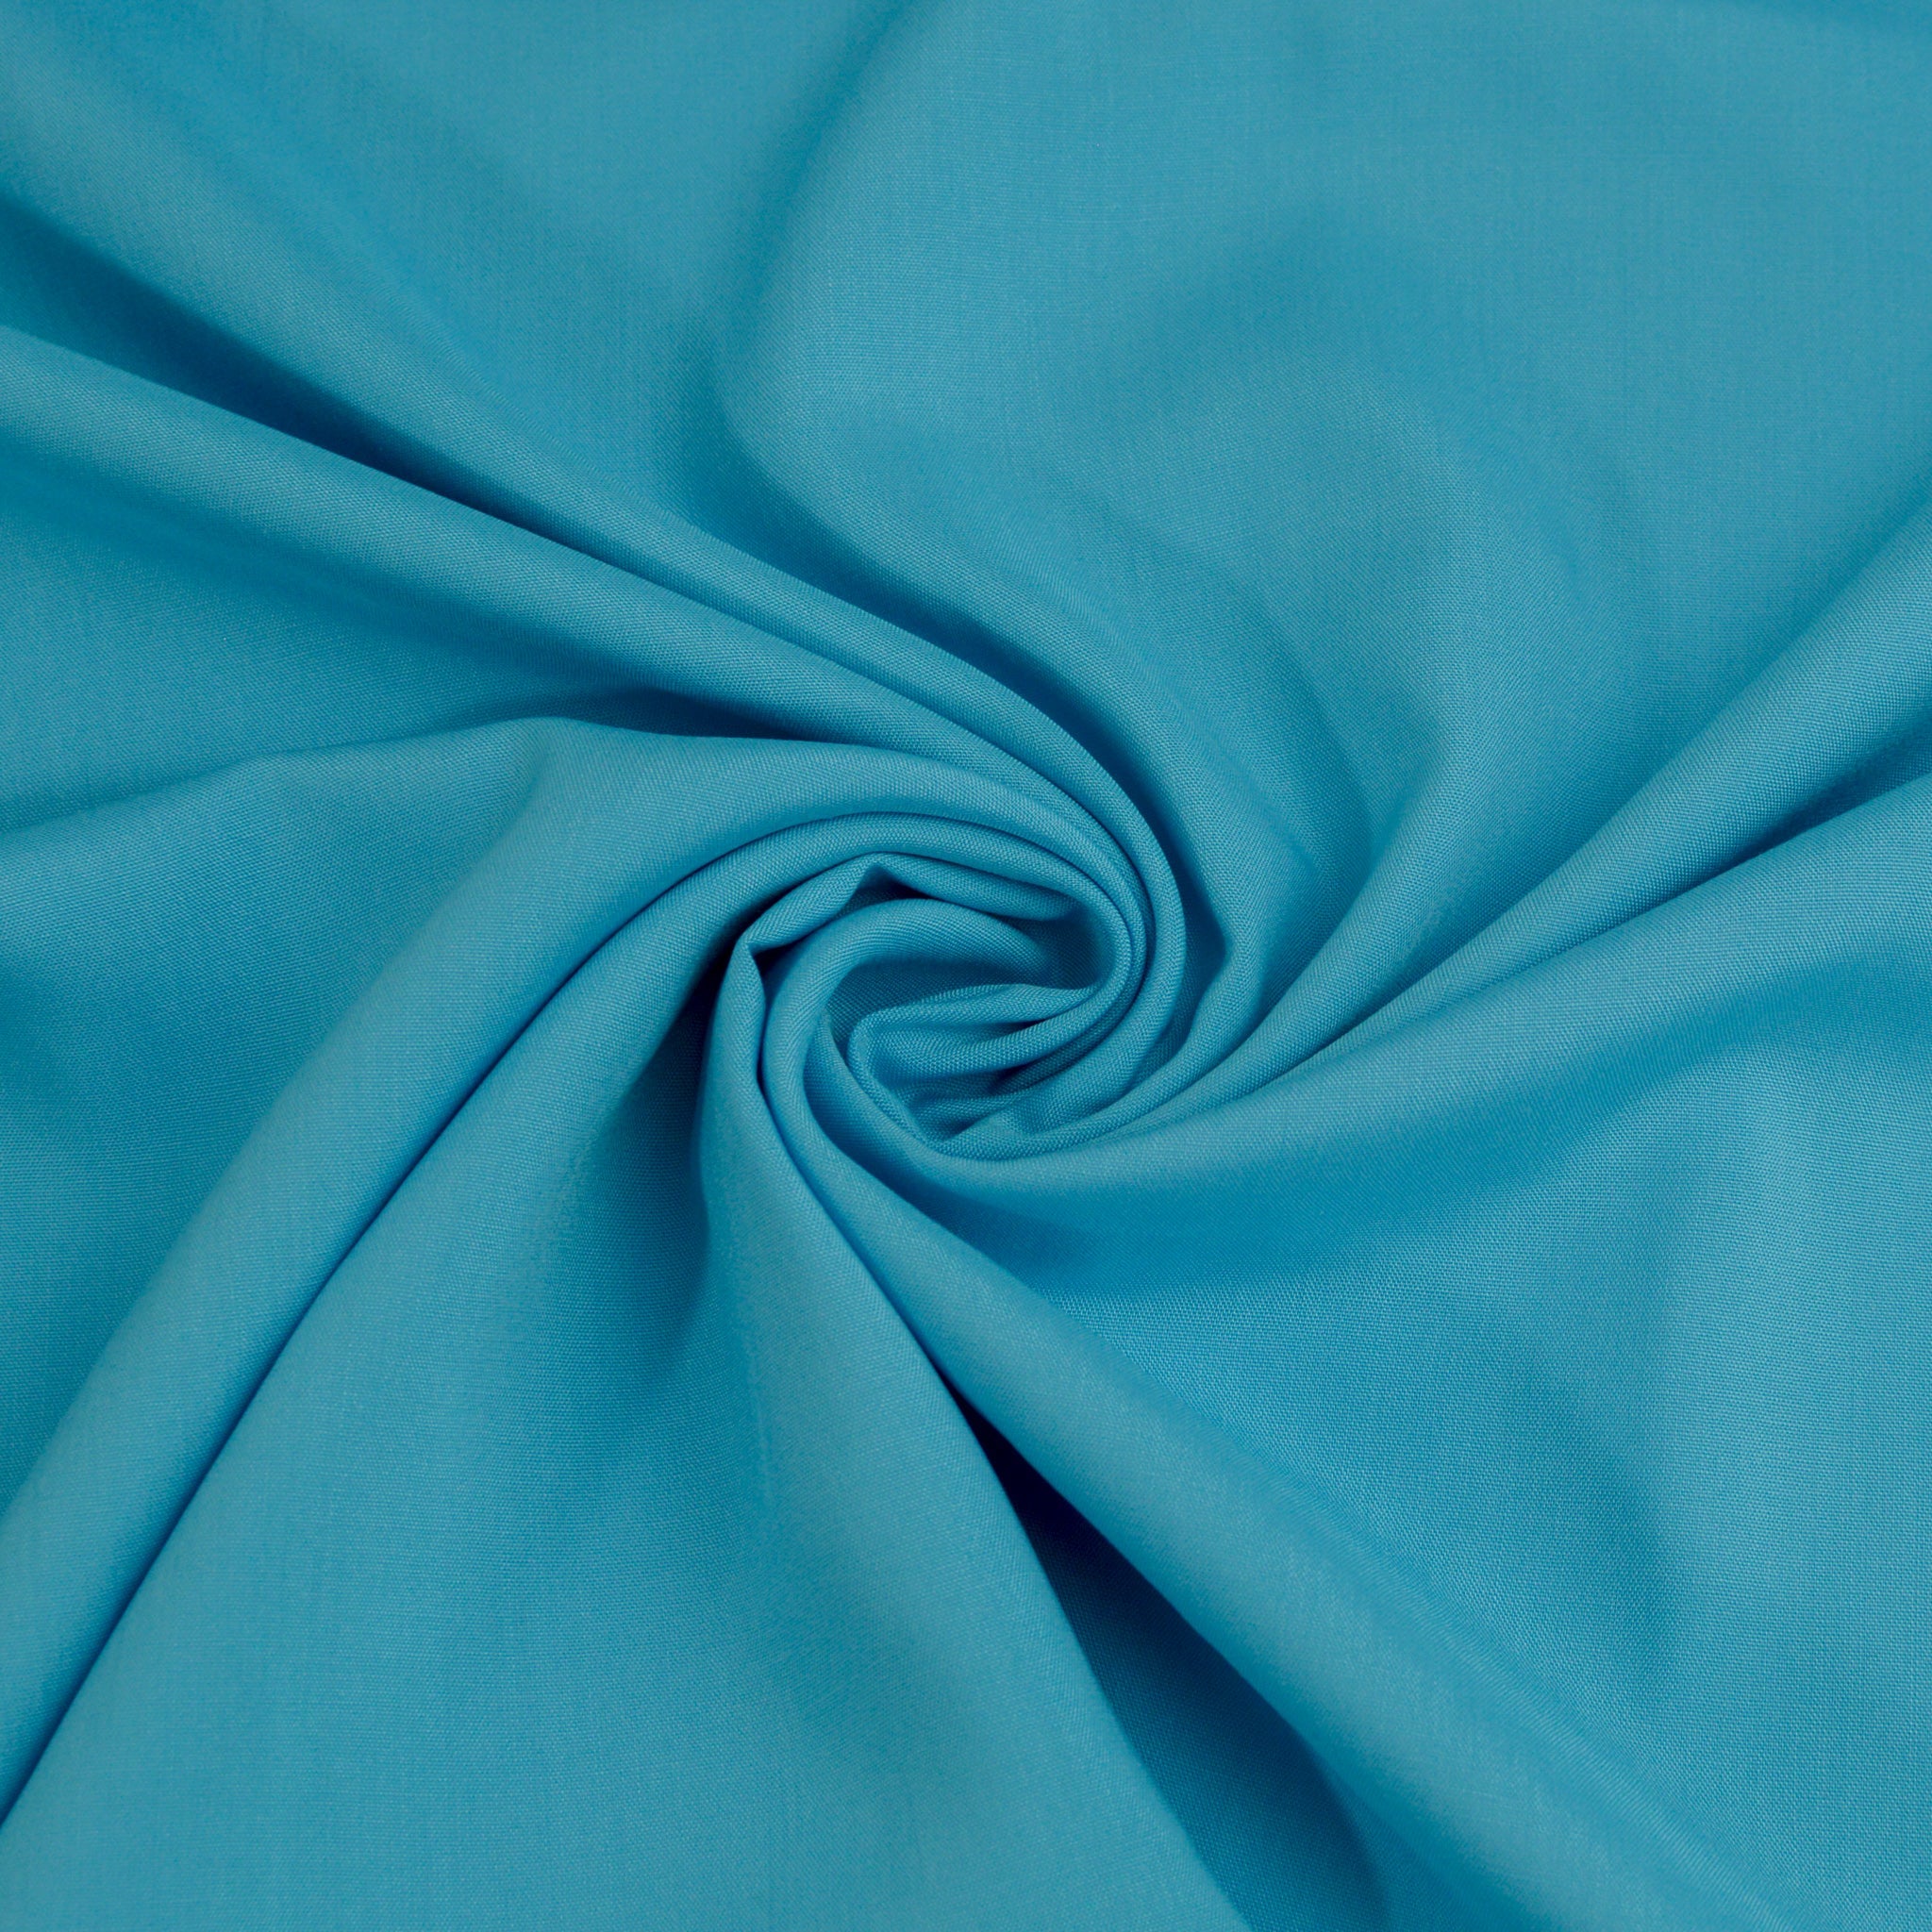 Viskose - aqua blau Fabric poshpinks